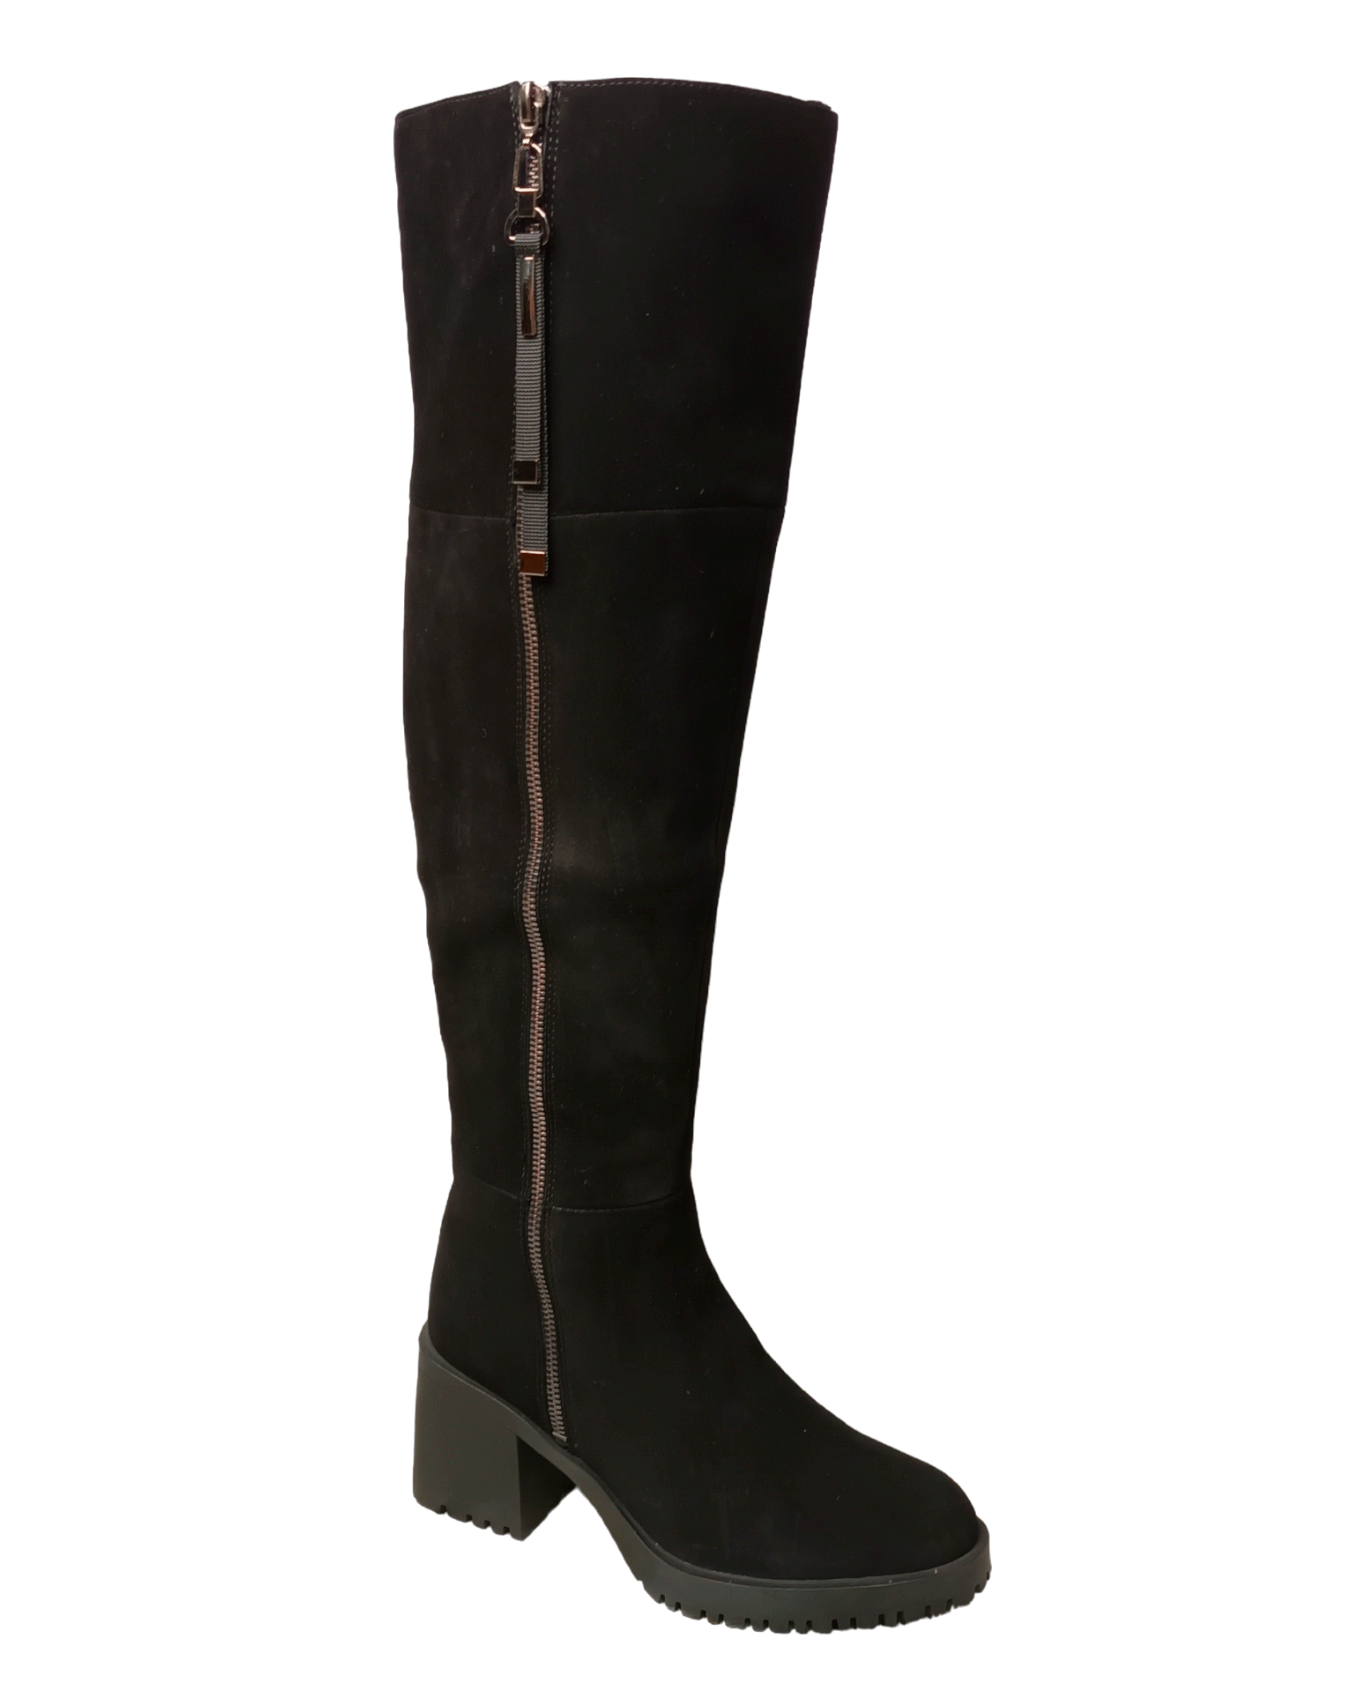 Сапоги высокие женские зимние замшевые черные M0421